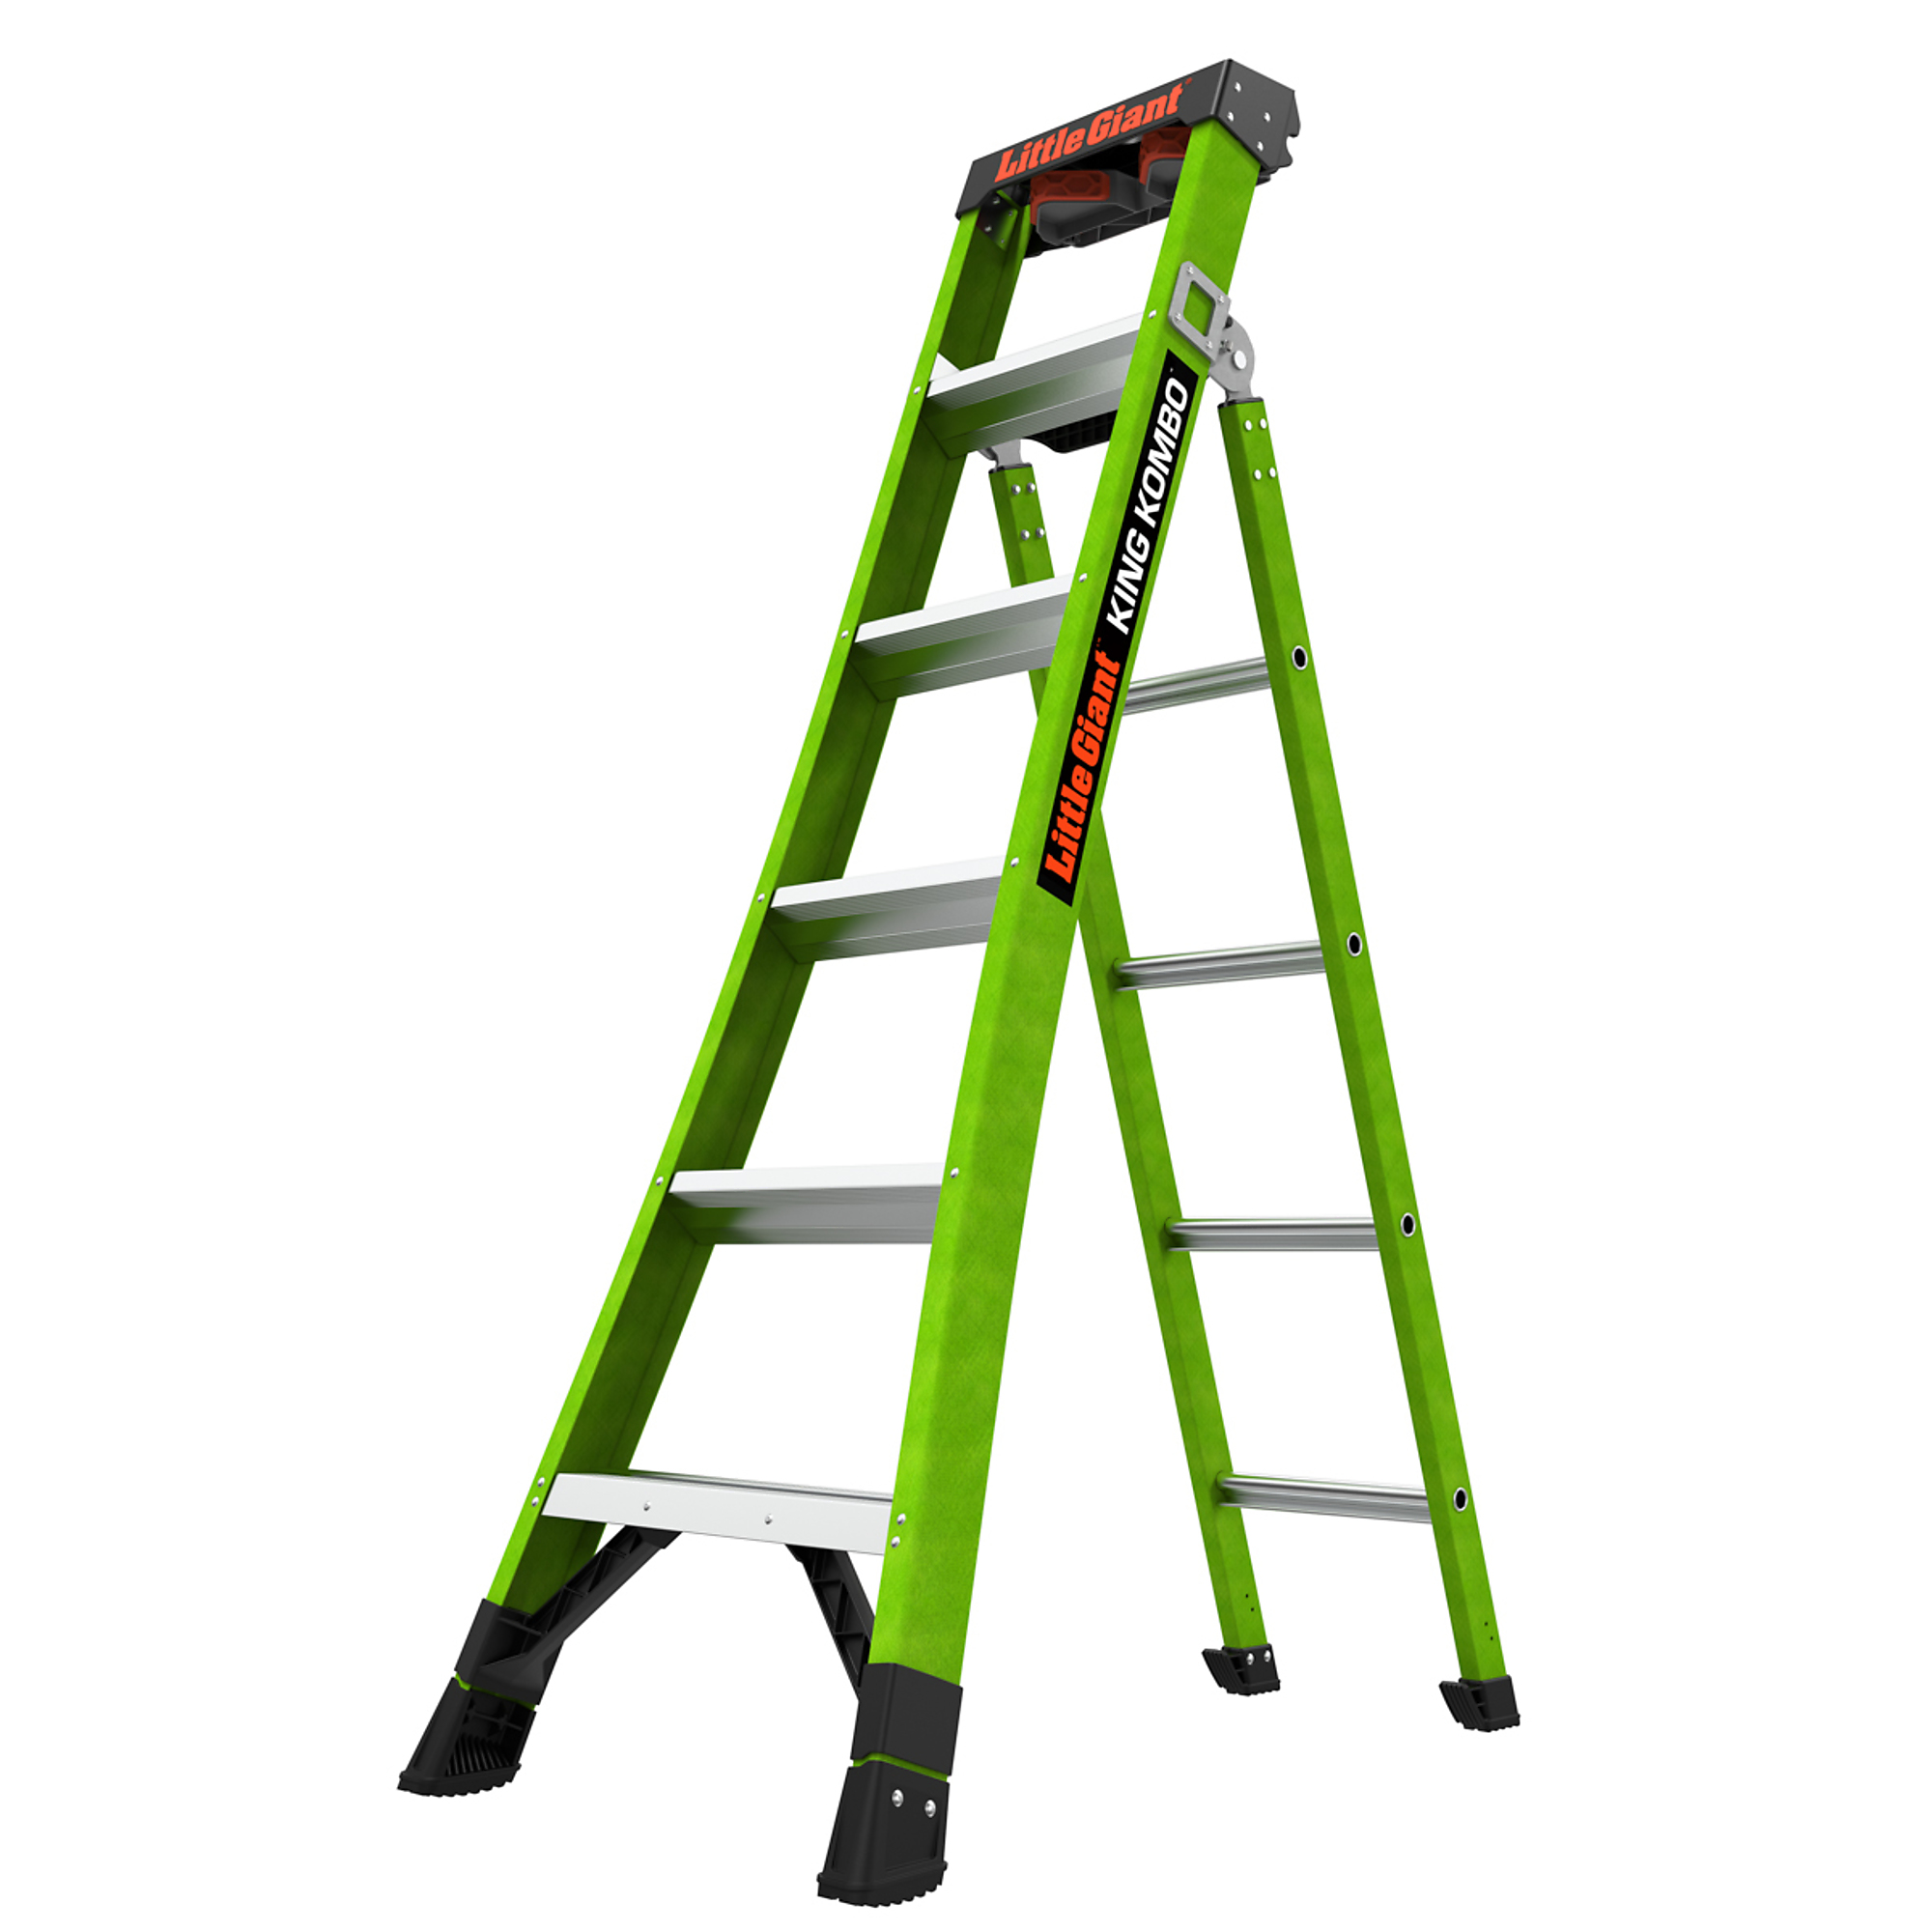 KING KOMBO Profes 6ft. 375lb Fiberglass Combo Ladder, Height 6 ft, Capacity 375 lb, Material Fiberglass, Model - Little Giant Ladder 13906-001